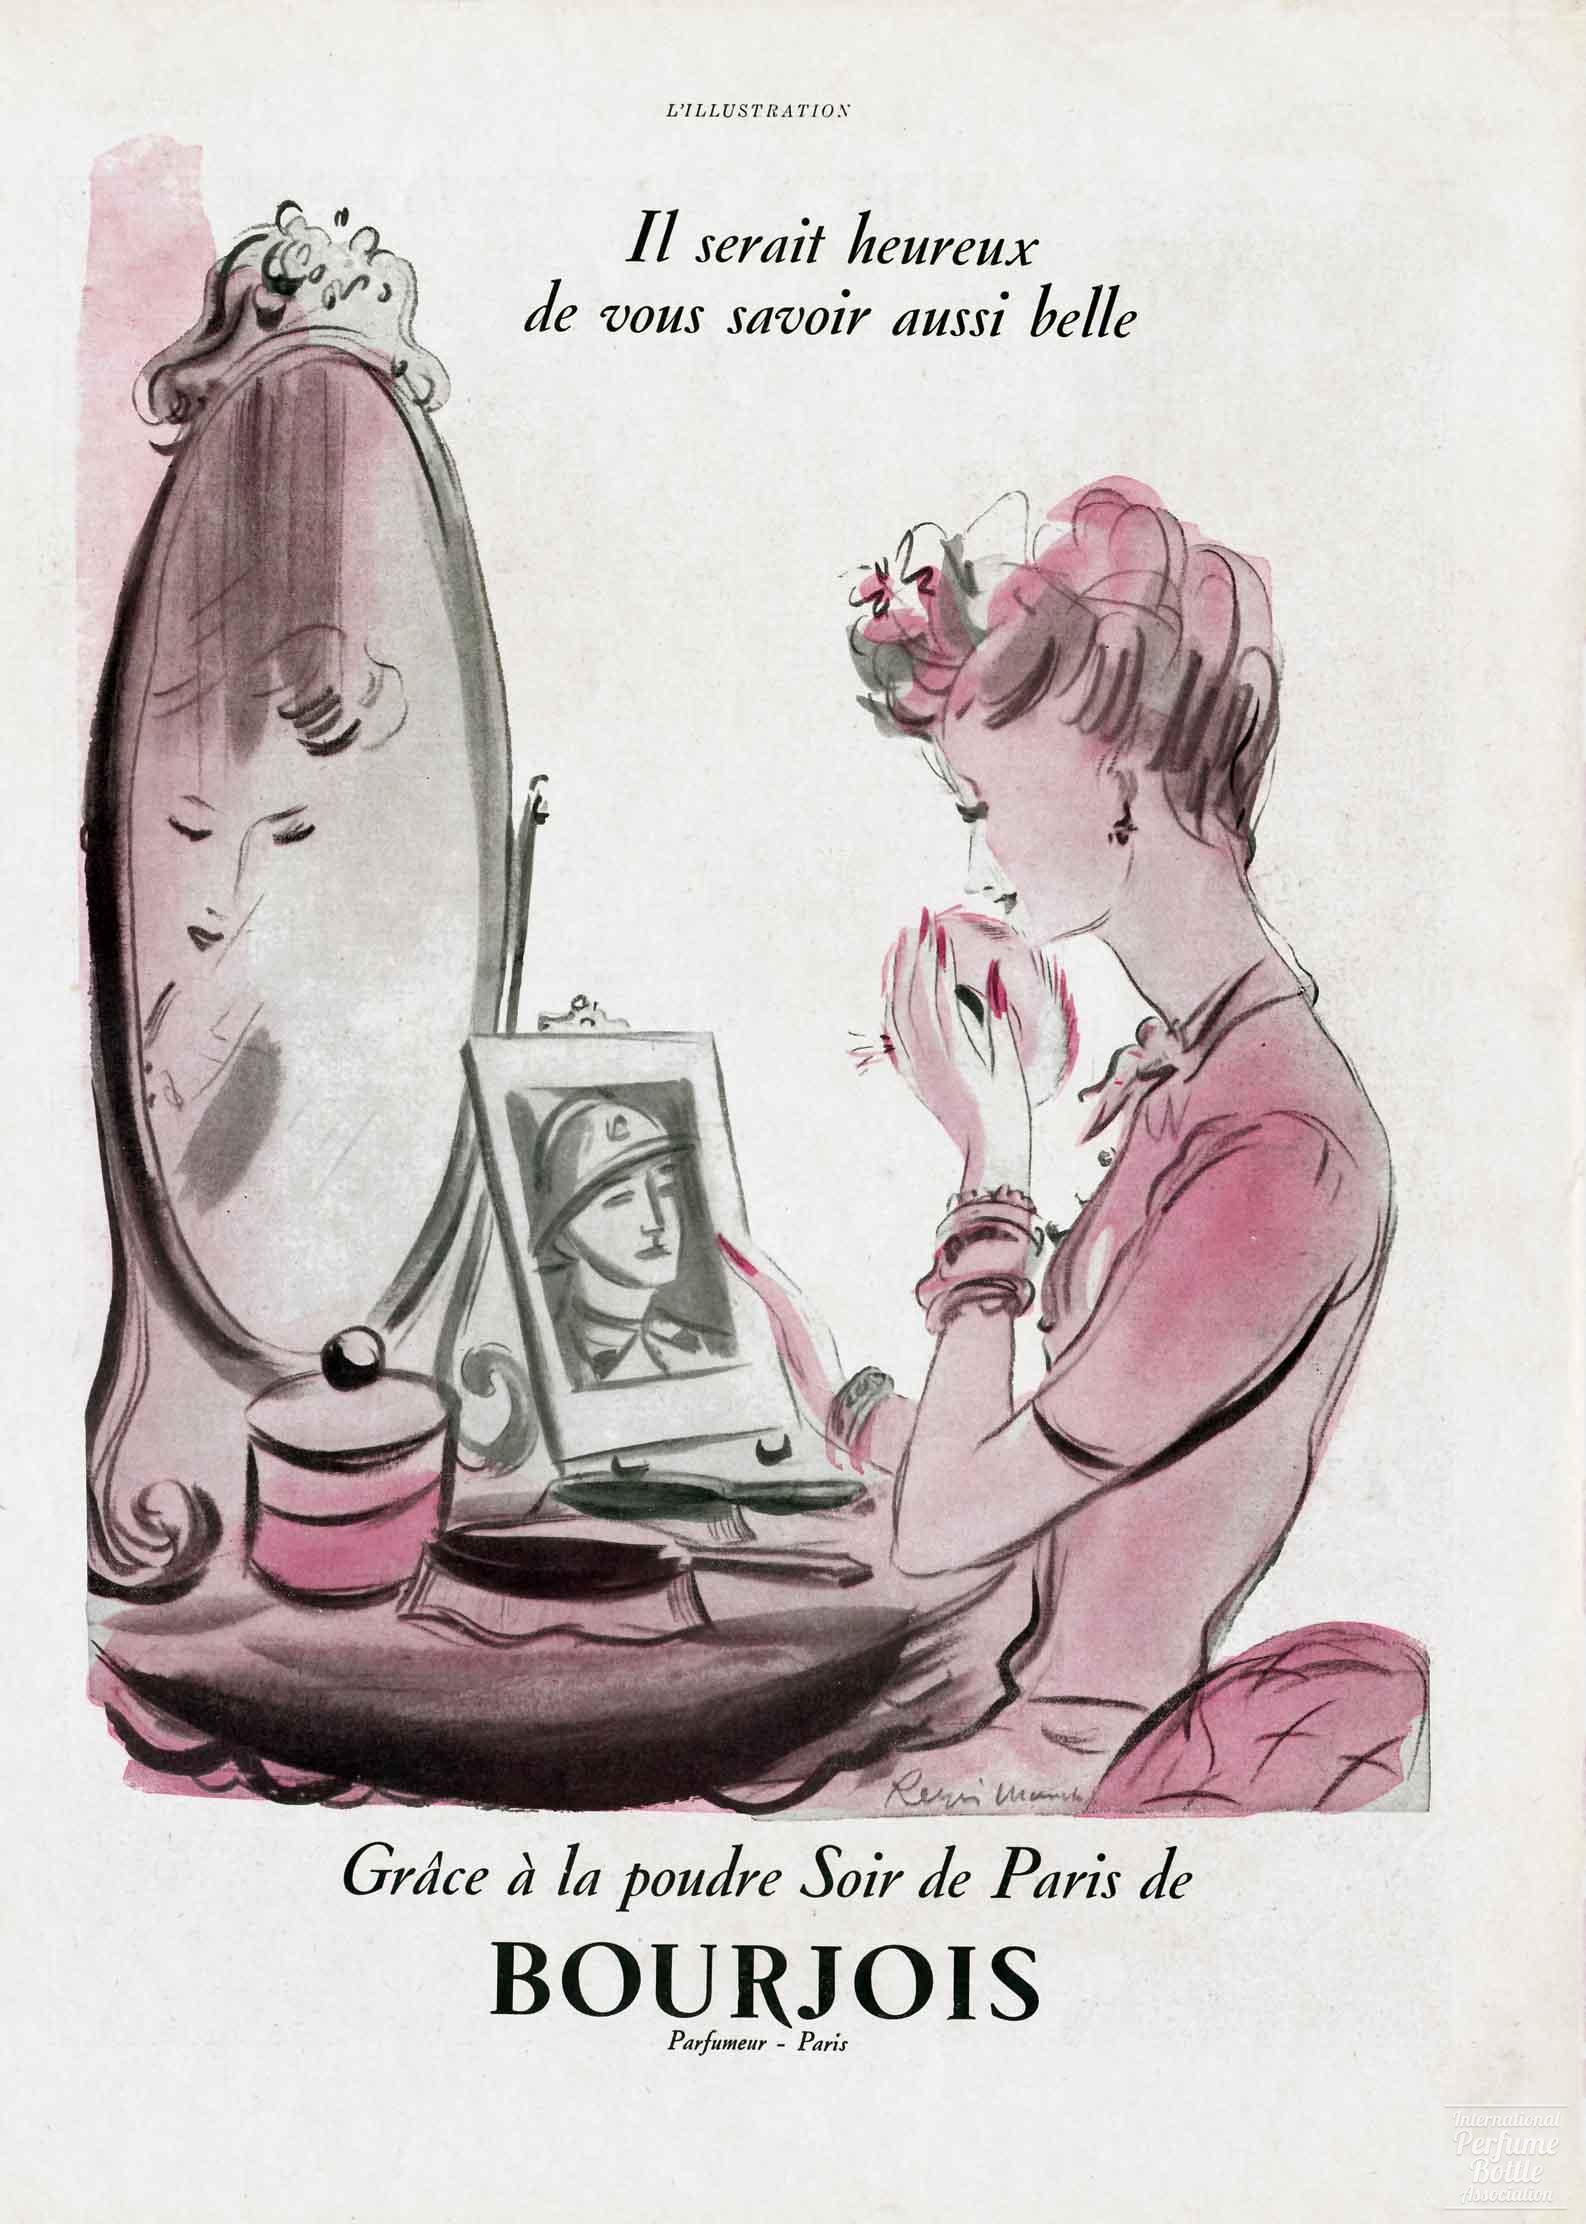 “Soir de Paris” by Bourjois Advertisement - 1939